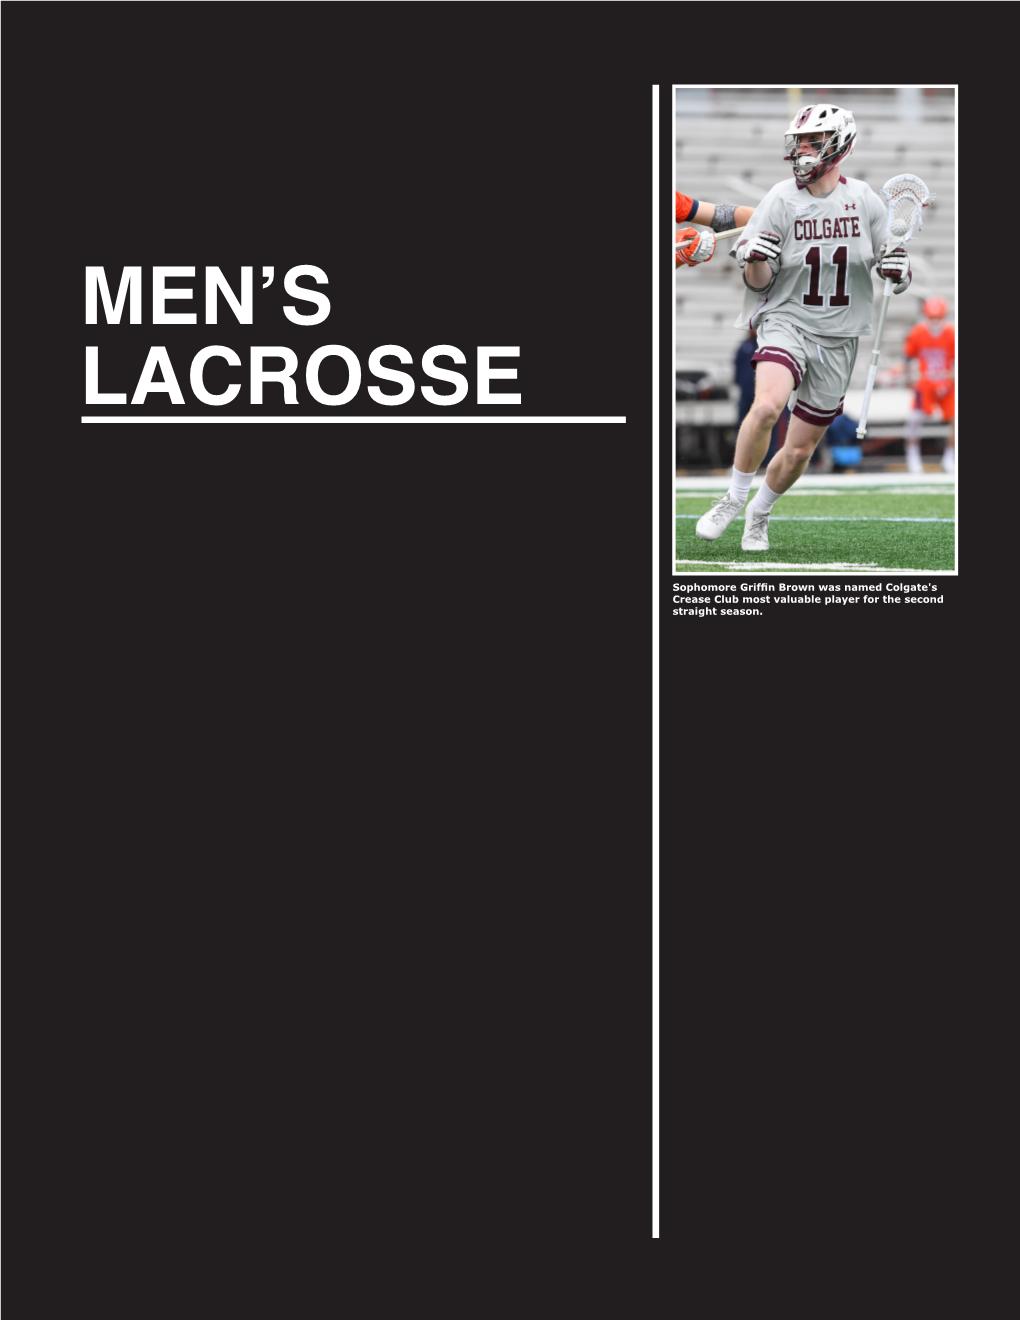 Men's Lacrosse